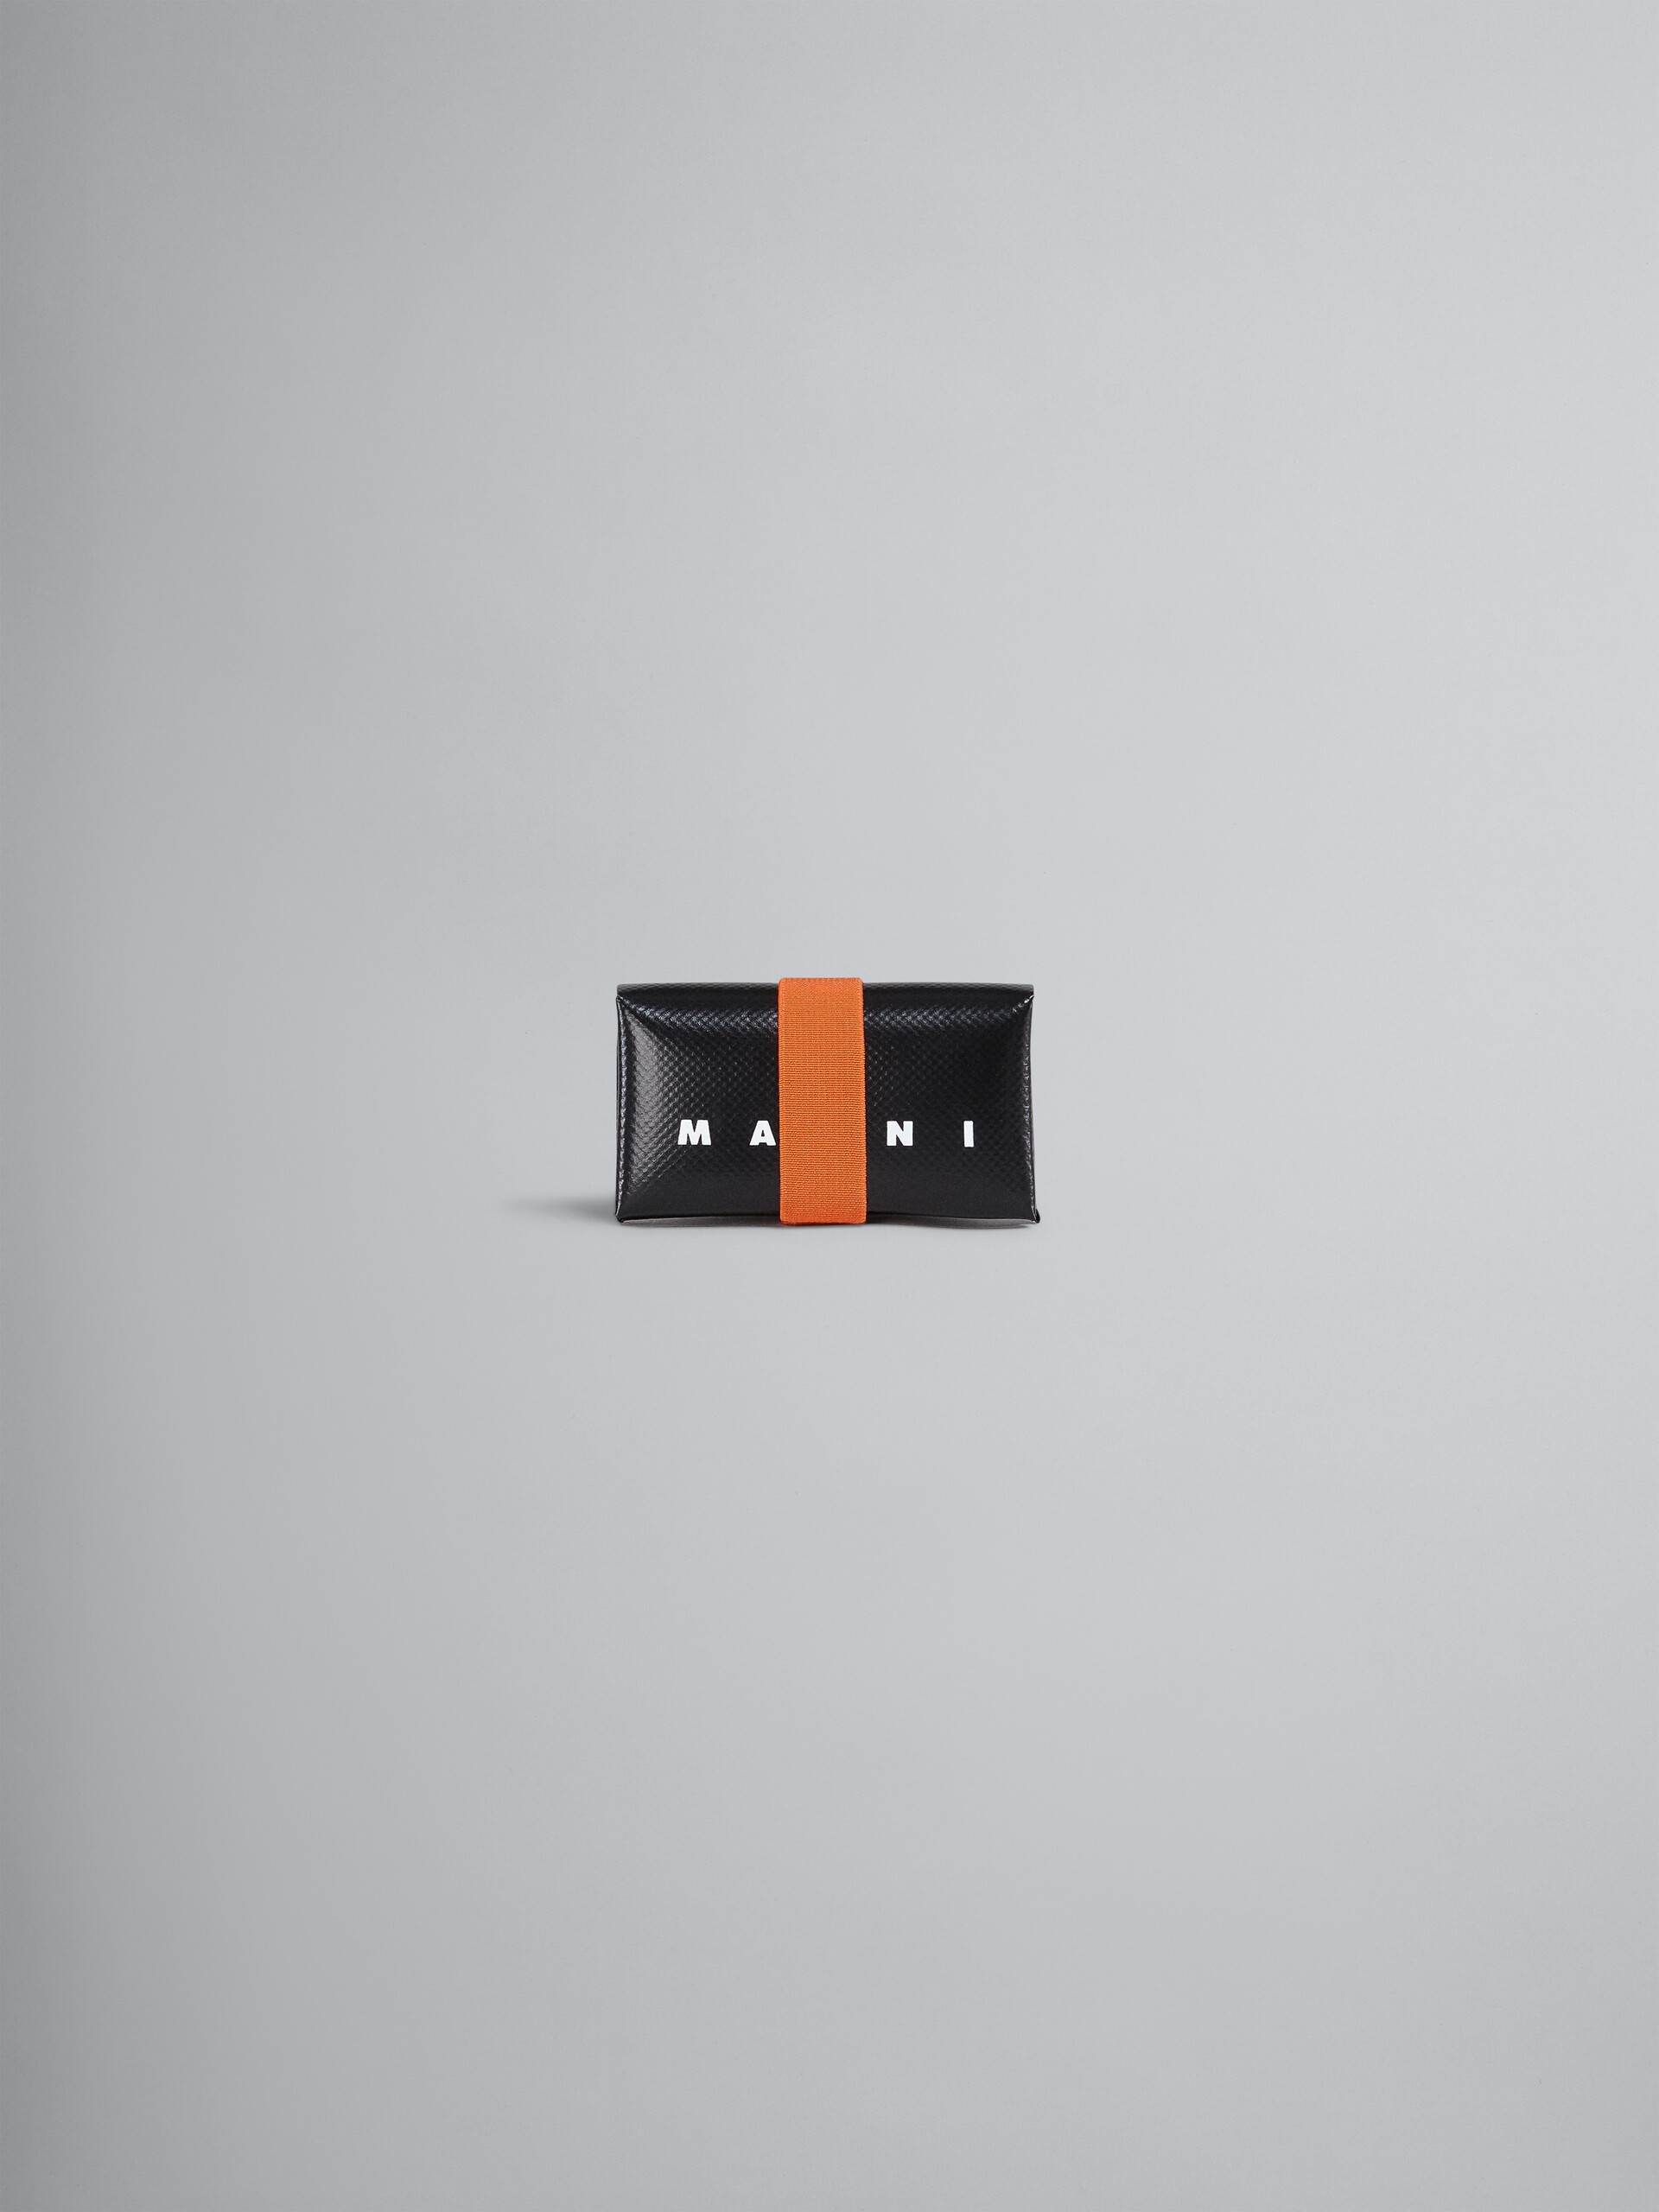 Portafoglio tri-fold in PVC nero e arancio - Portafogli - Image 1